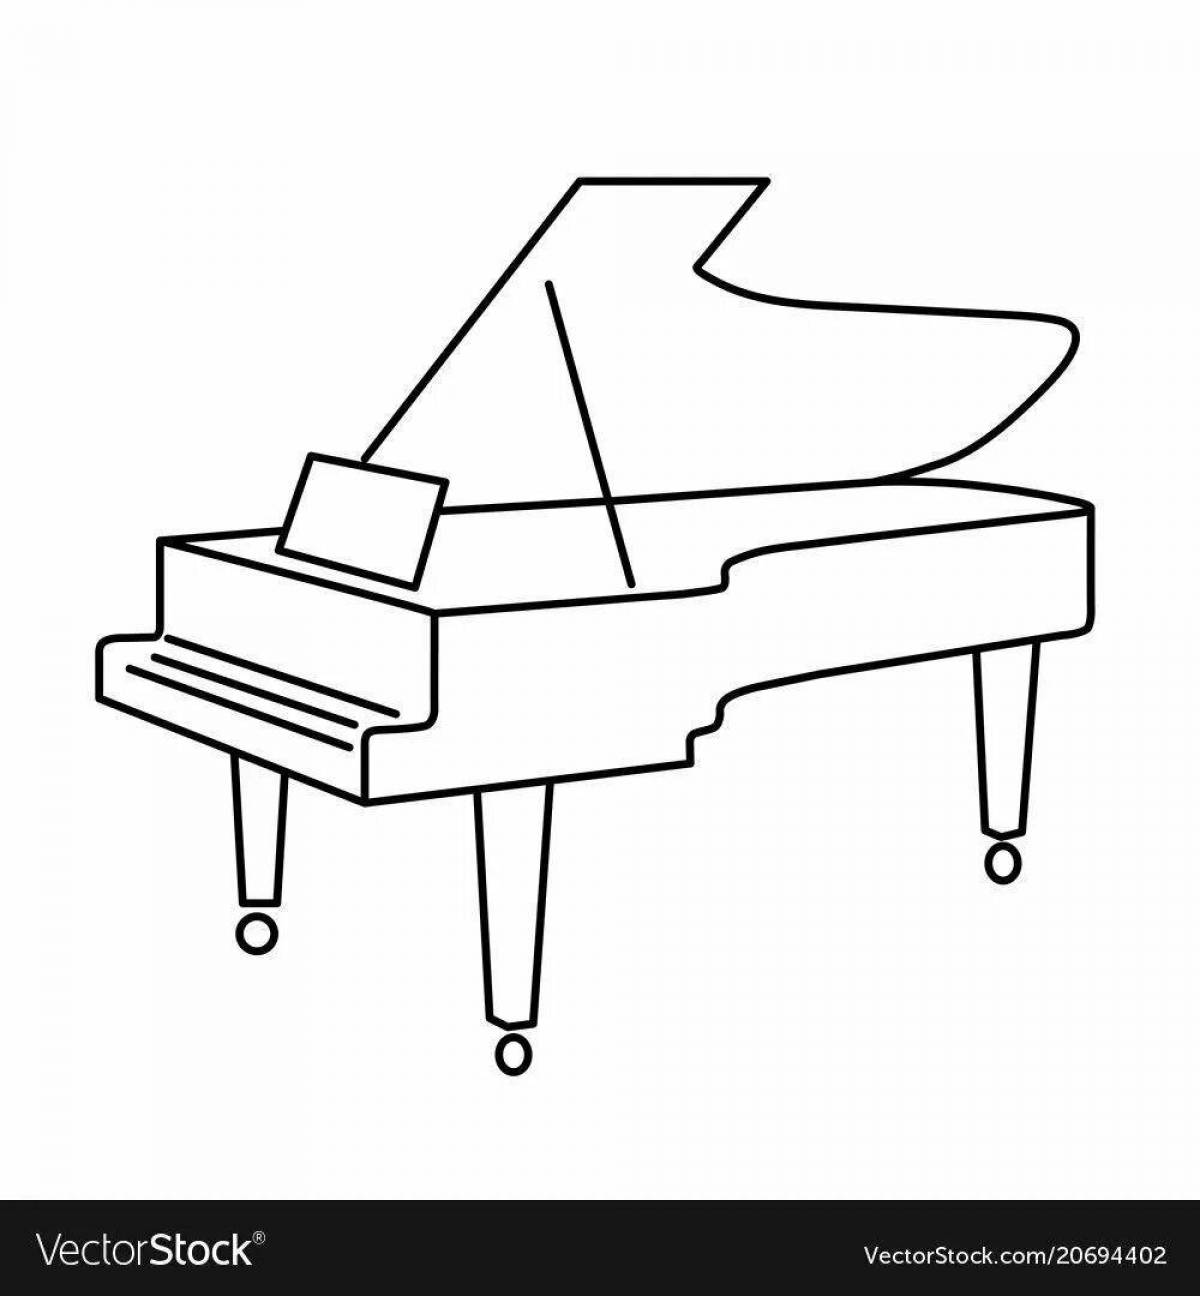 Раскраски фортепиано — бесплатные распечатанные листы для детей